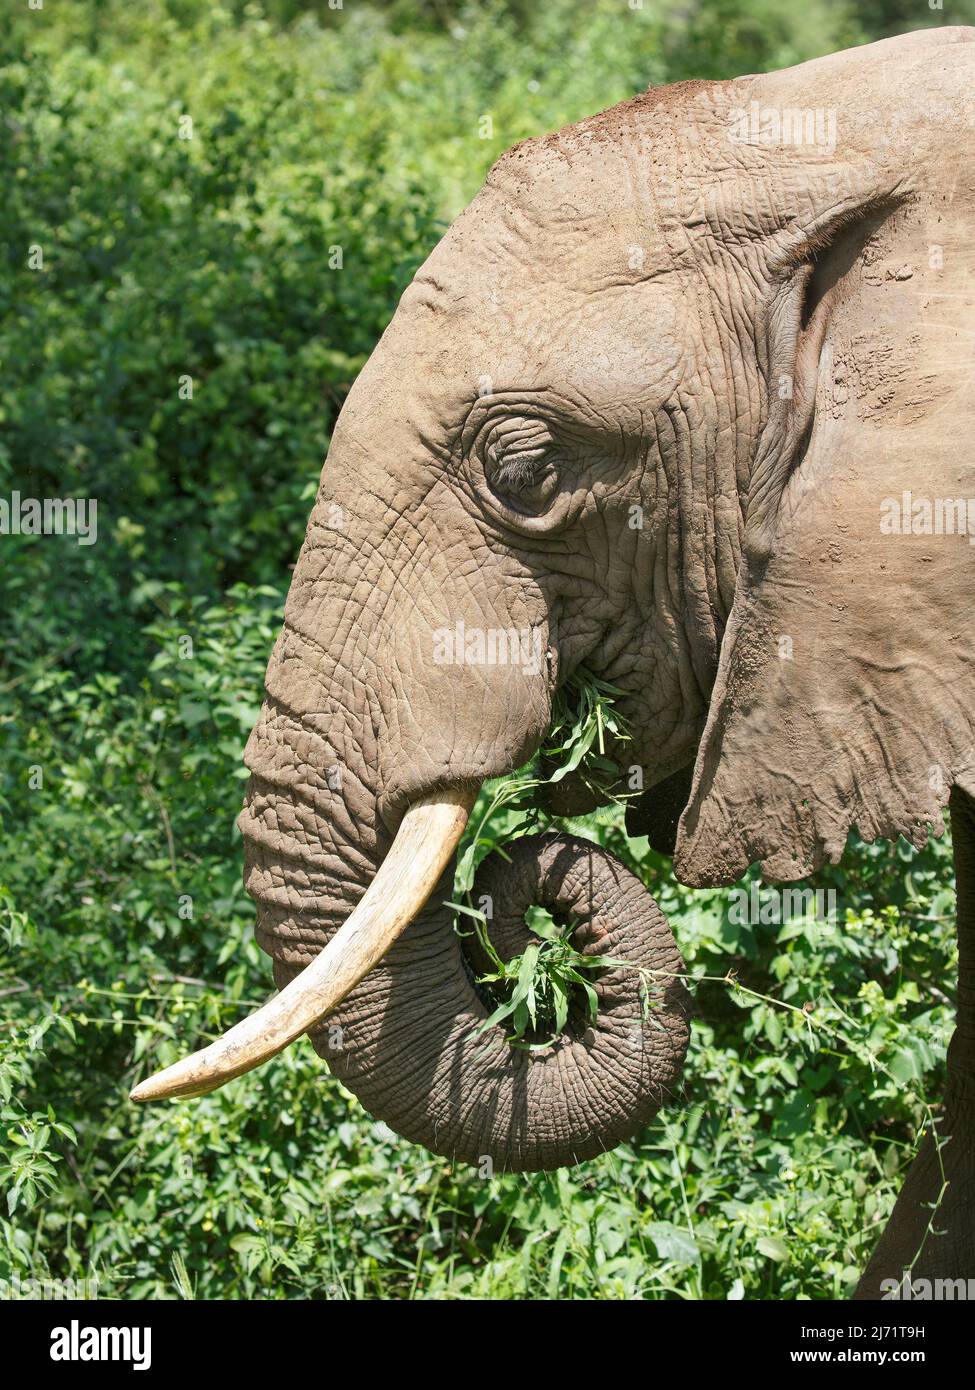 Nahaufnahme eines afrikanischen Elefanten (Loxodonta africana), der mit seinem Stamm Laub in seinen Mund schiebt Stockfoto